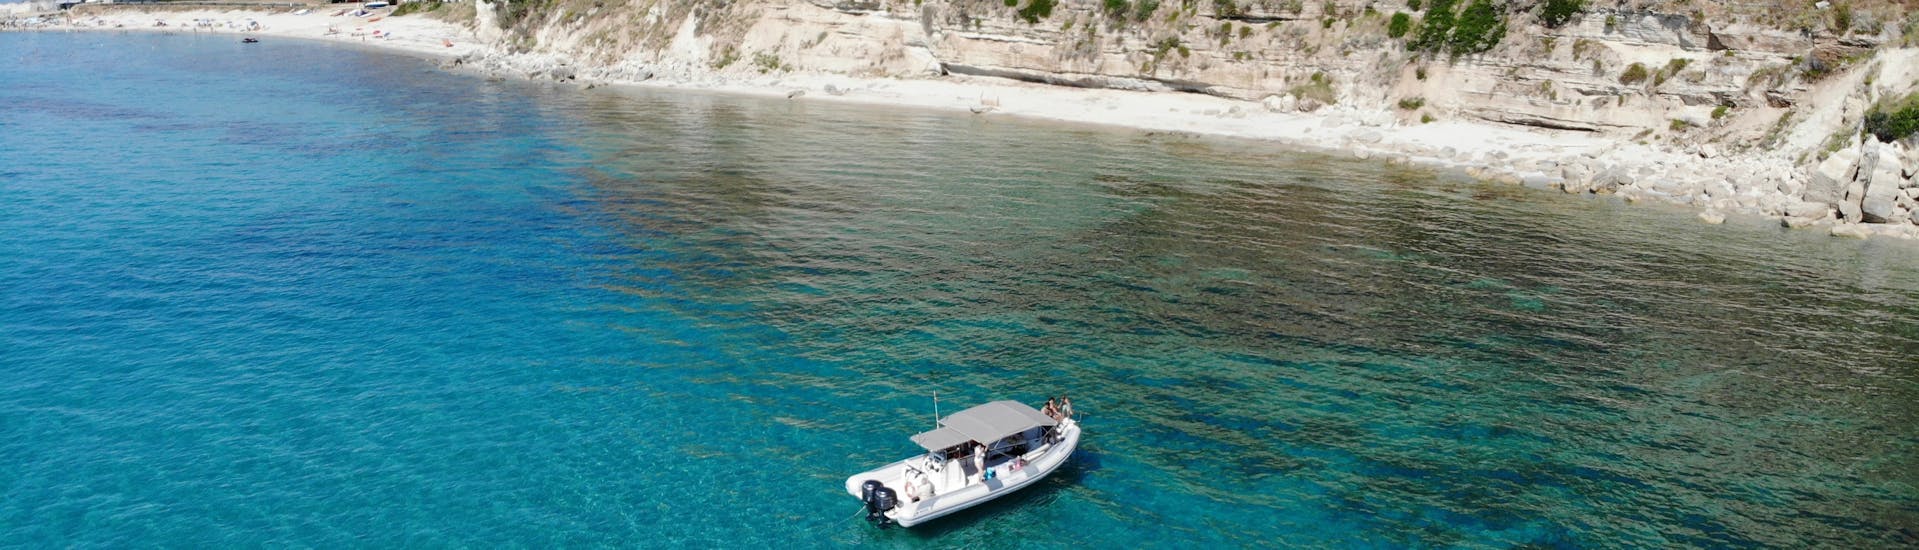 Vue aérienne du bateau de TropeaSub durant la Balade en bateau de Tropea à Capo Vaticano avec Snorkeling.